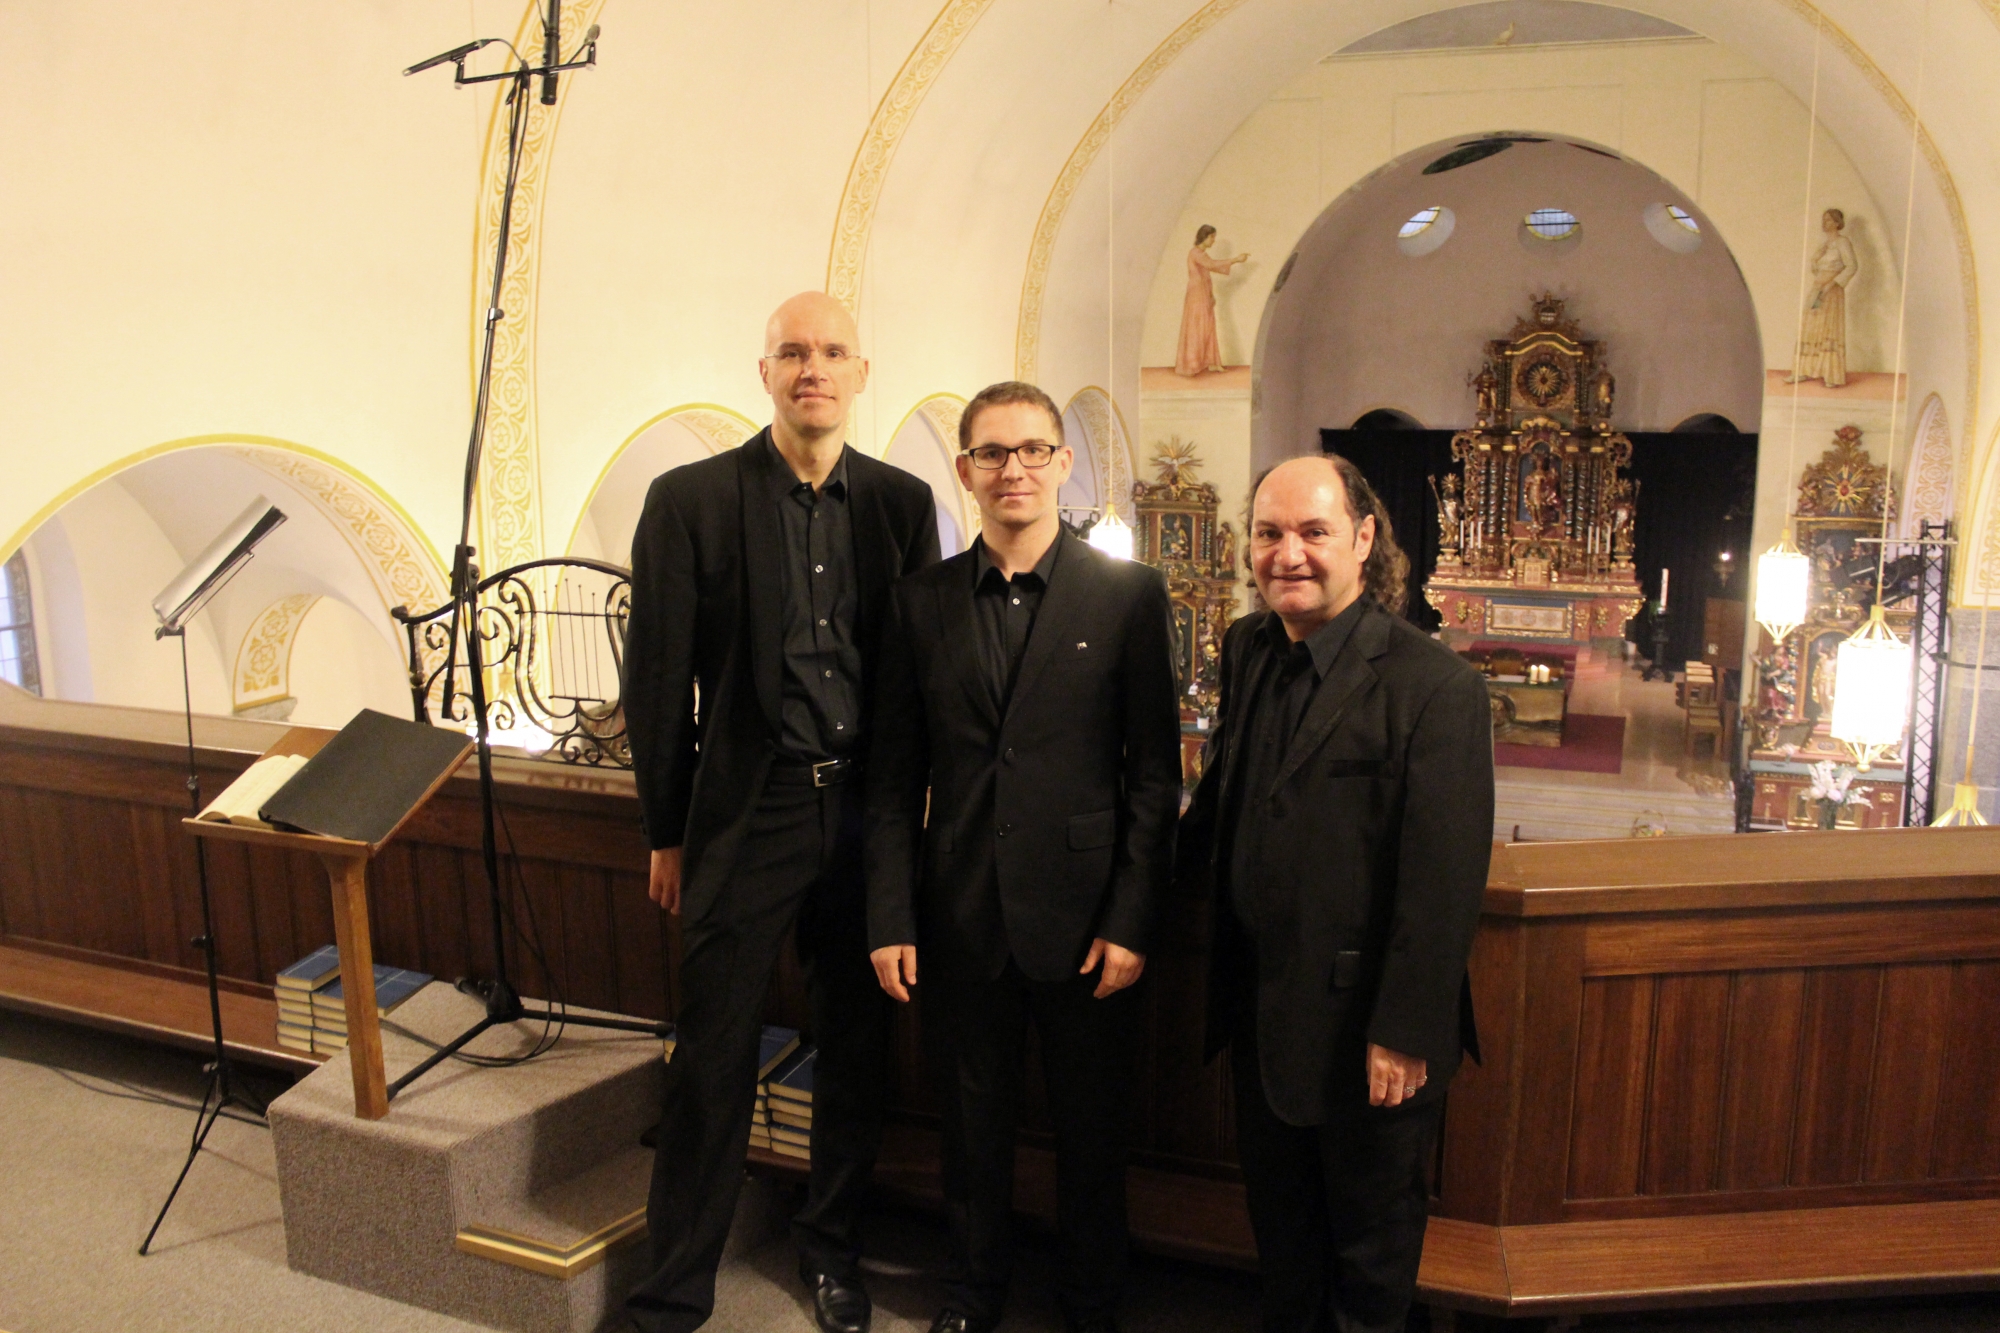 La Chapelle est avant tout un trio vocal composé de, de gauche à droite: Vincent Arlettaz, basse; Tristan Blanchet, ténor; Christophe Carré, contreténor.